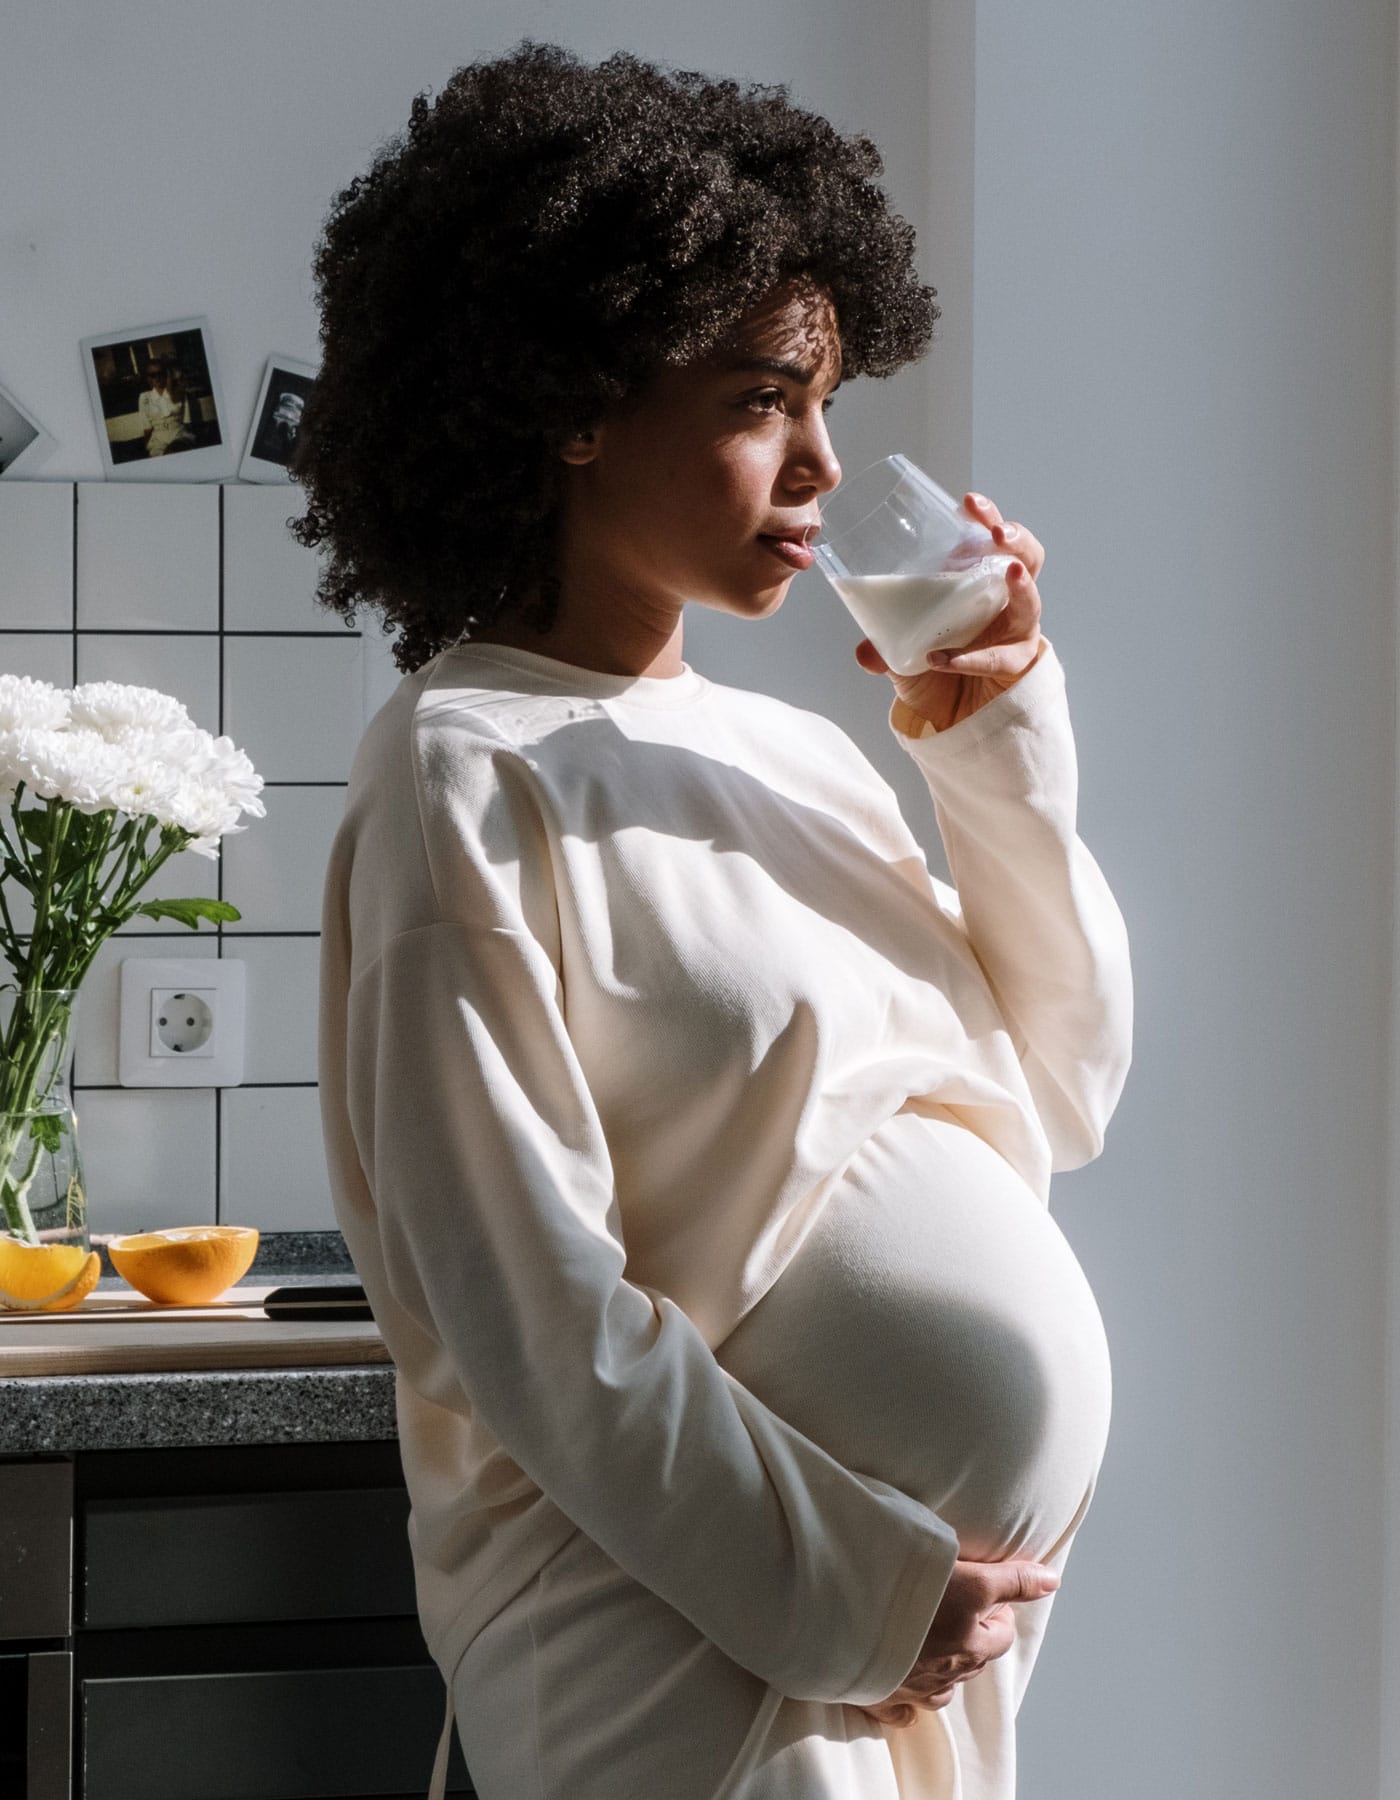 Tipps für Schwangerschaft und Geburt in Berlin: Kraft tanken vor der Geburt – ein Geburtsvorbereitungkurs kann Ängste nehmen. // HIMBEER